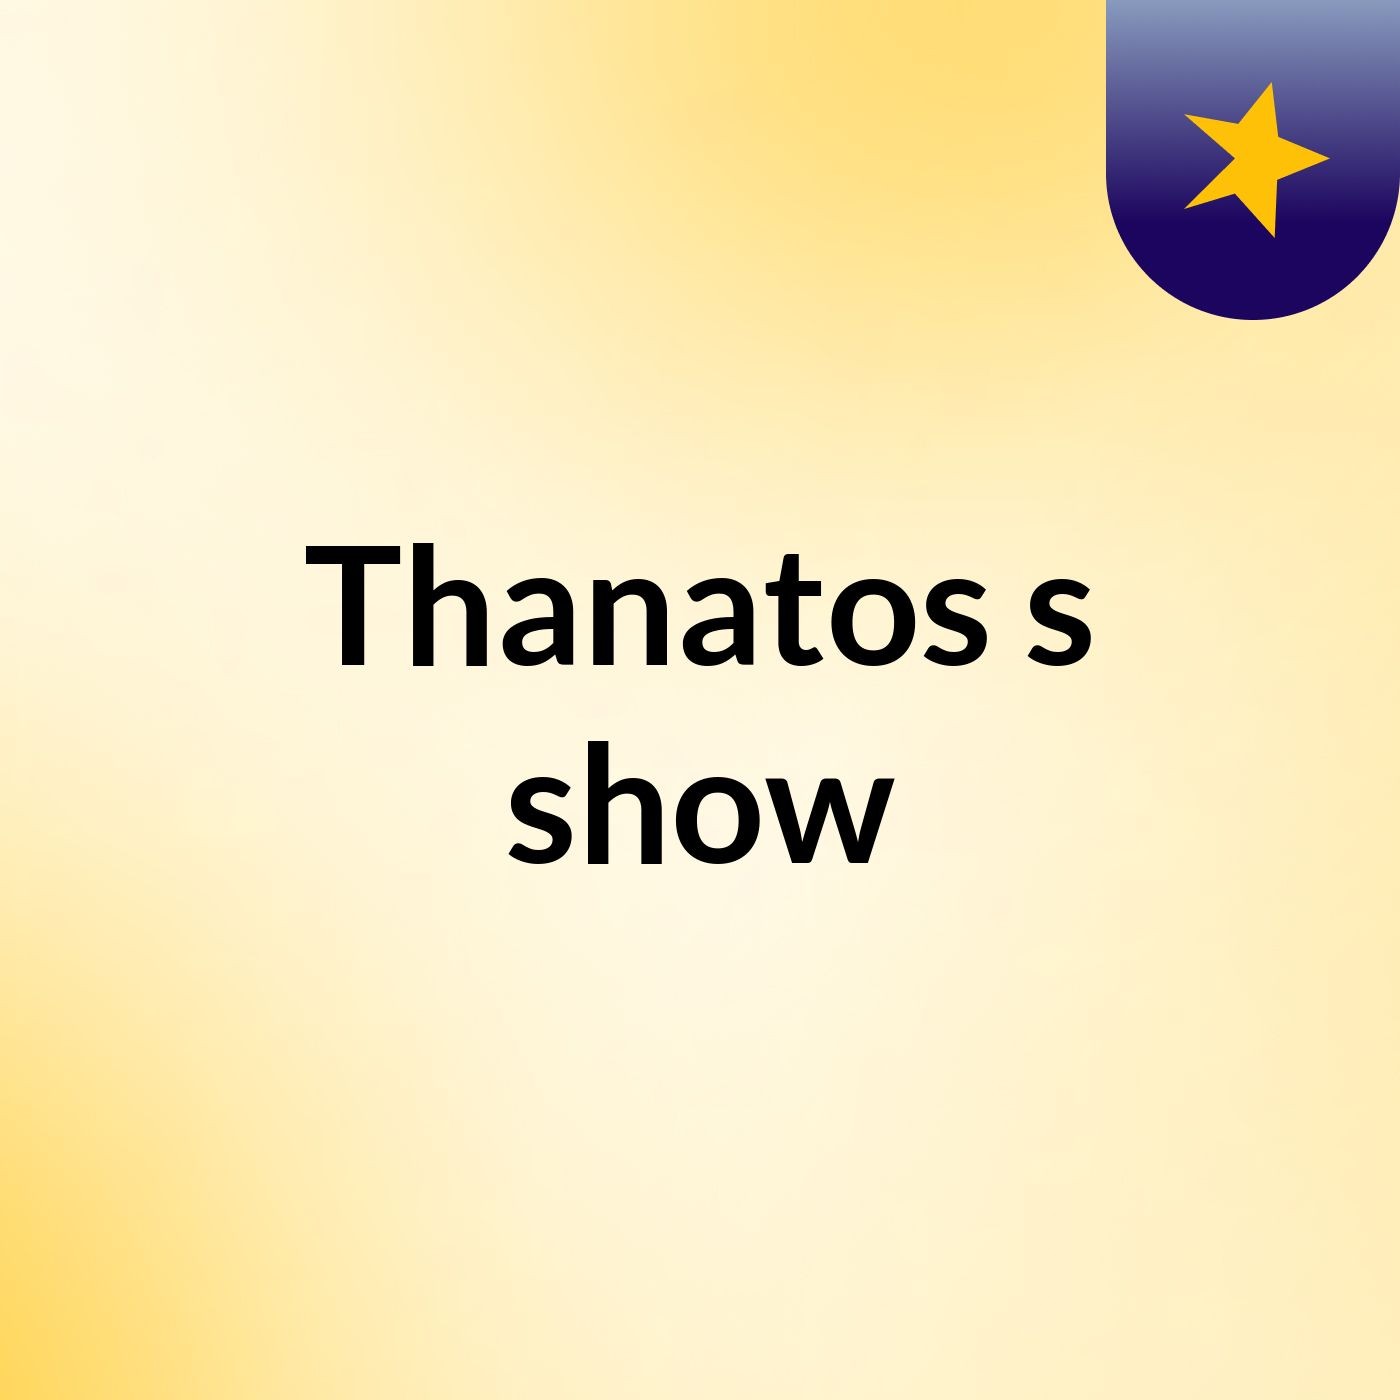 Thanatos's show